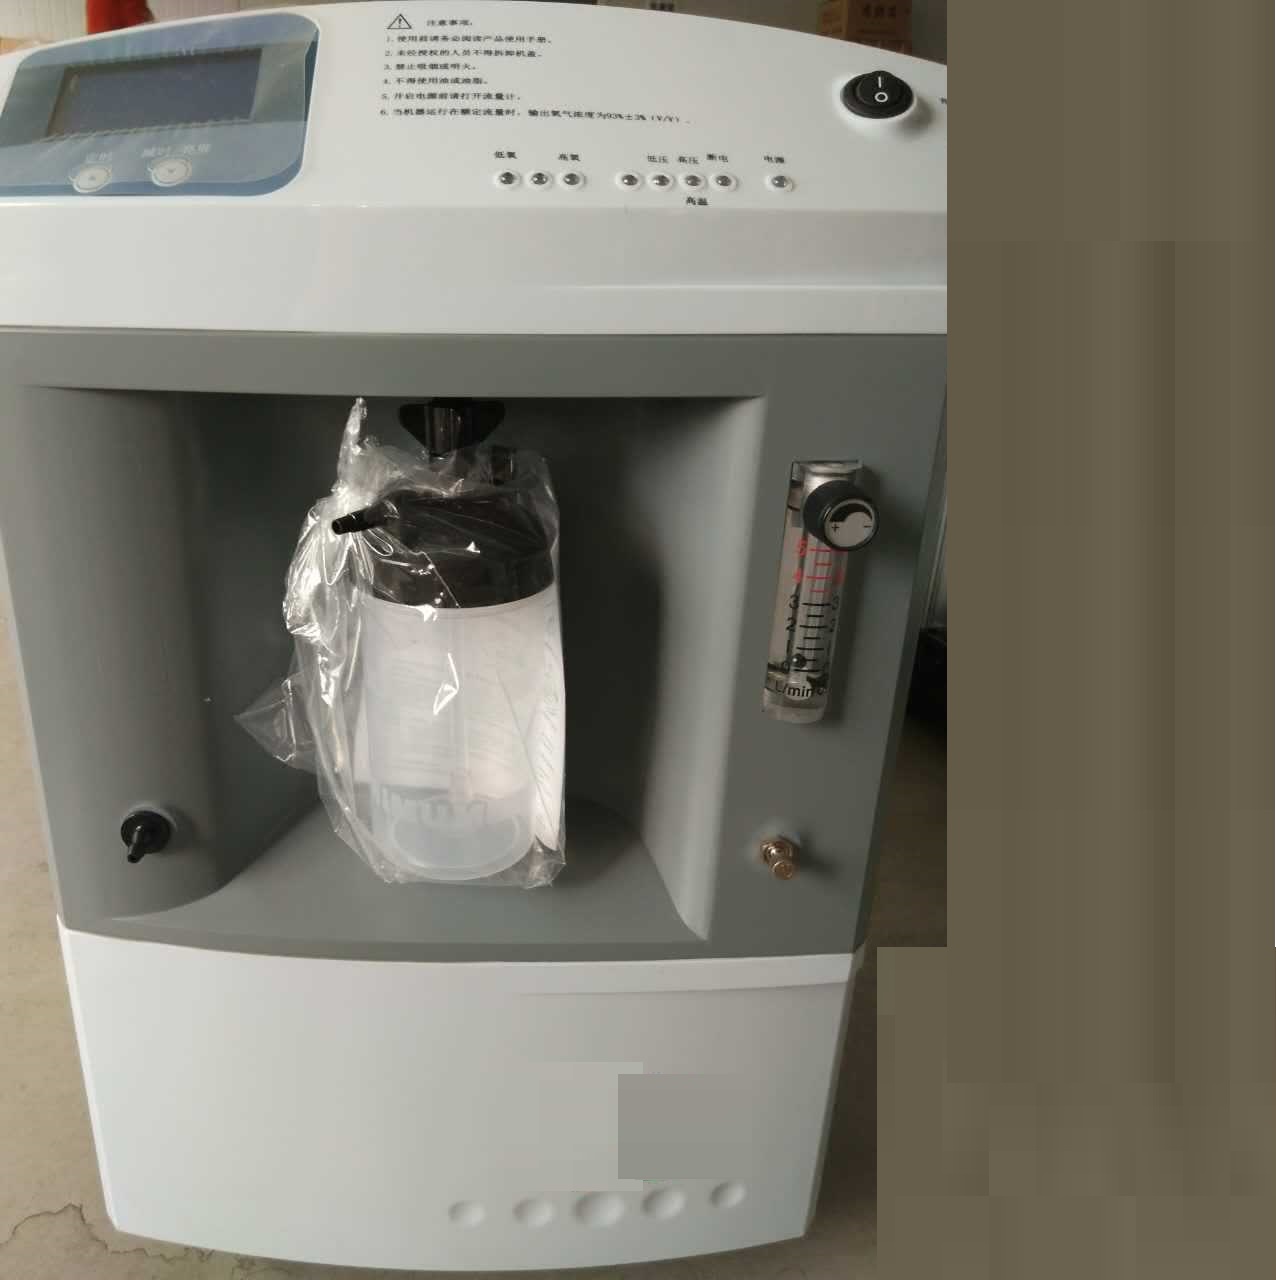 Mini concentratore/generatore di ossigeno elettrico portatile 3L dell'attrezzatura medica per uso domestico e ospedale